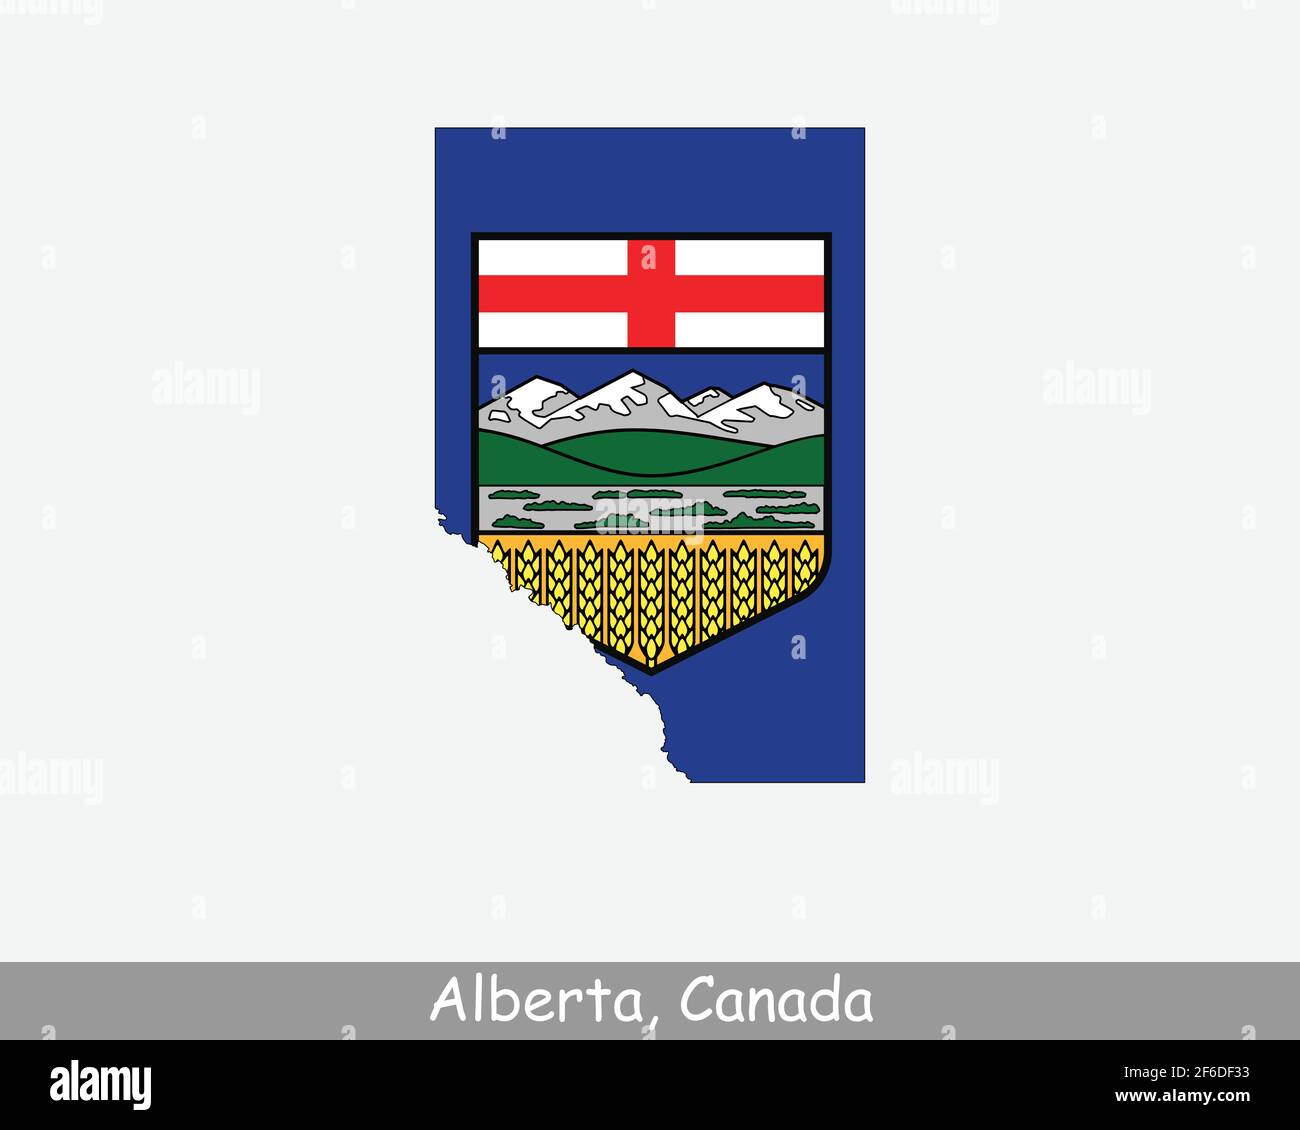 Drapeau de carte de l'Alberta. Carte de l'Alberta, Canada avec le drapeau de l'Alberta isolé sur fond blanc. Province canadienne, AB. Illustration vectorielle. Illustration de Vecteur